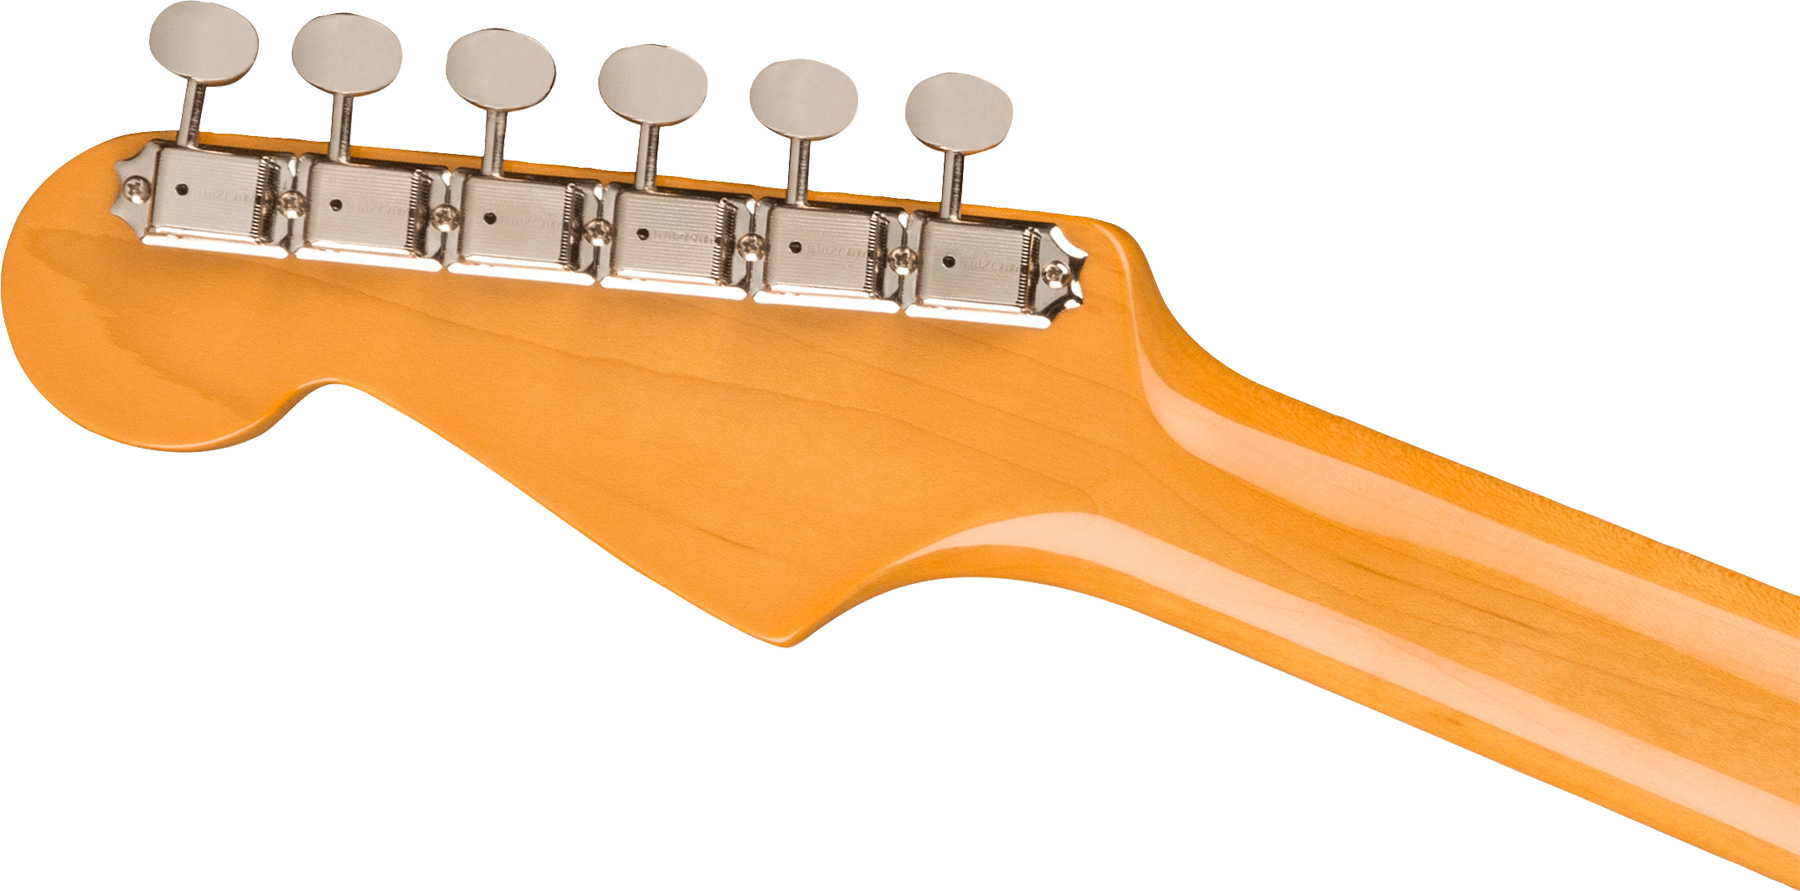 Fender Strat 1961 American Vintage Ii Usa 3s Trem Rw - 3-color Sunburst - Guitare Électrique Forme Str - Variation 3